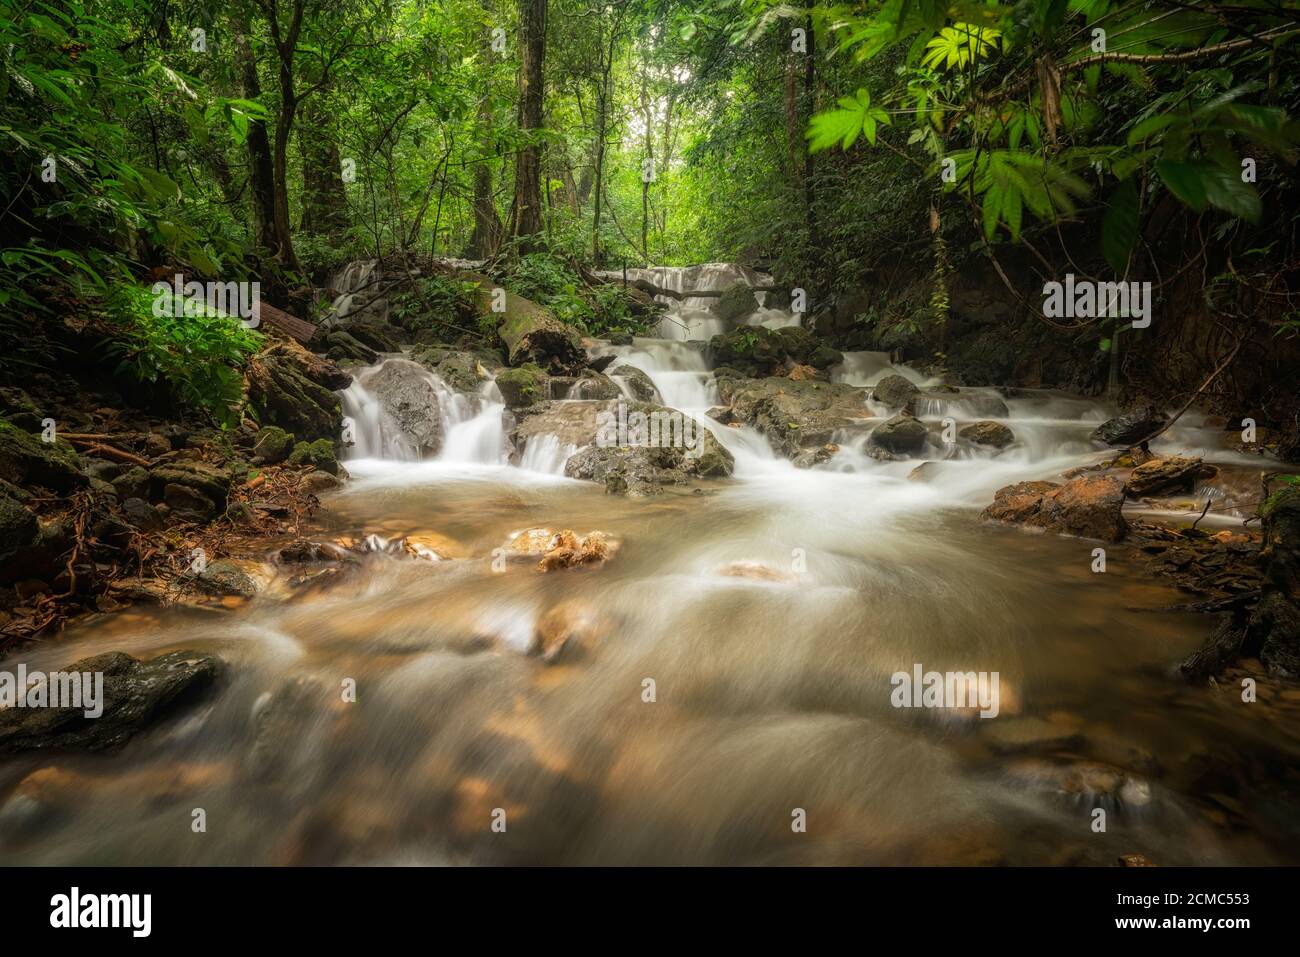 Cascata nella giungla tropicale profonda. Foto Stock